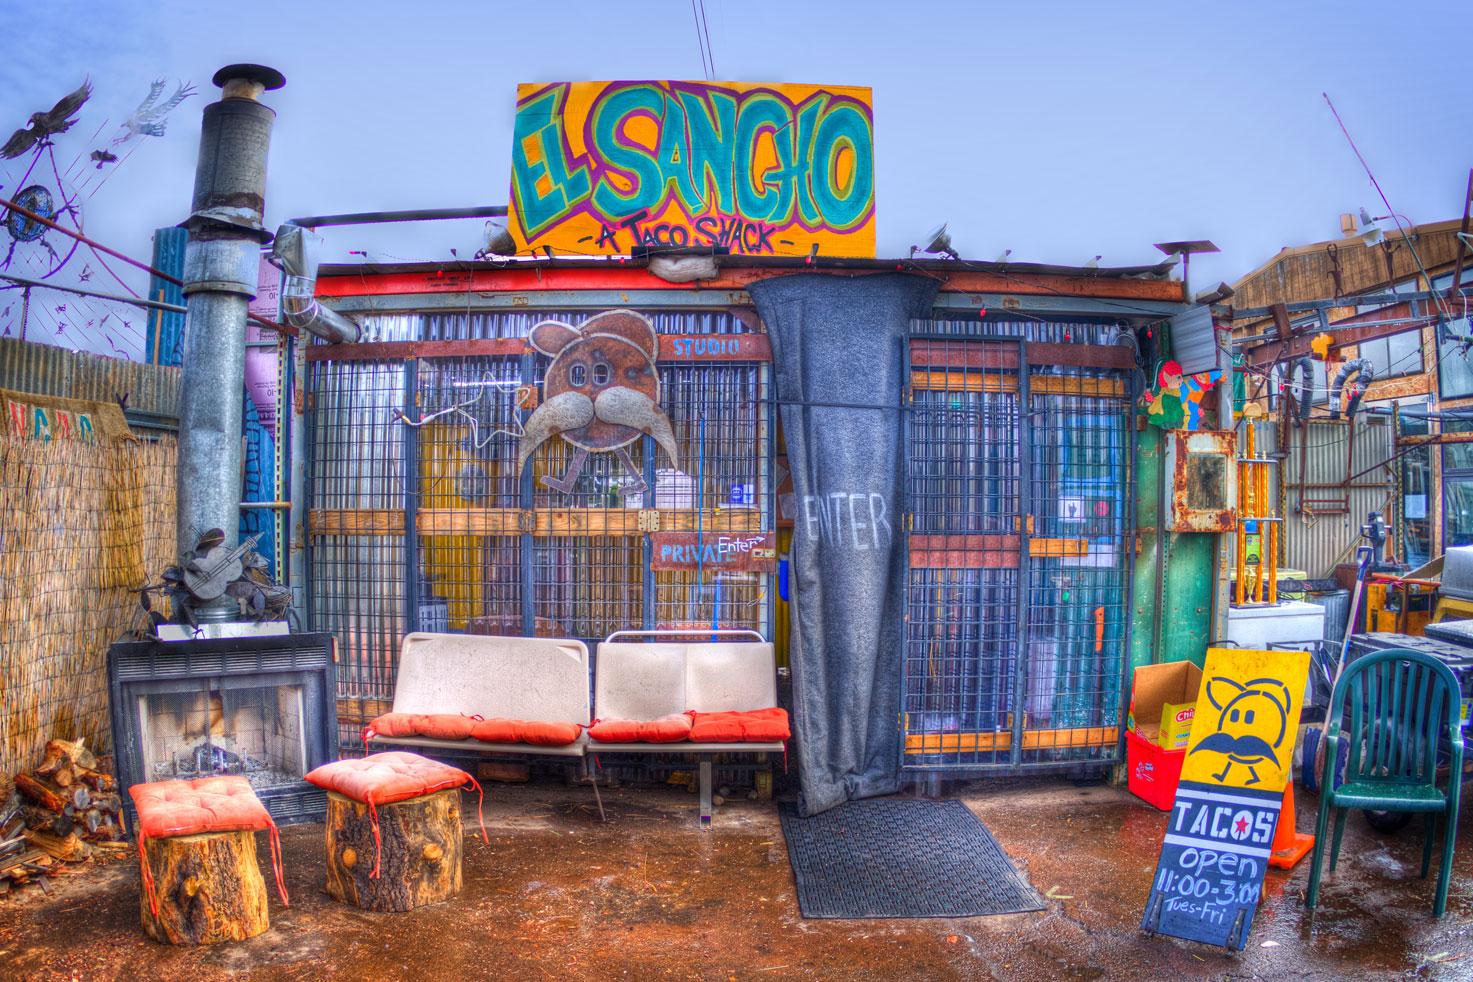 Pet Friendly El Sancho Taco Shop